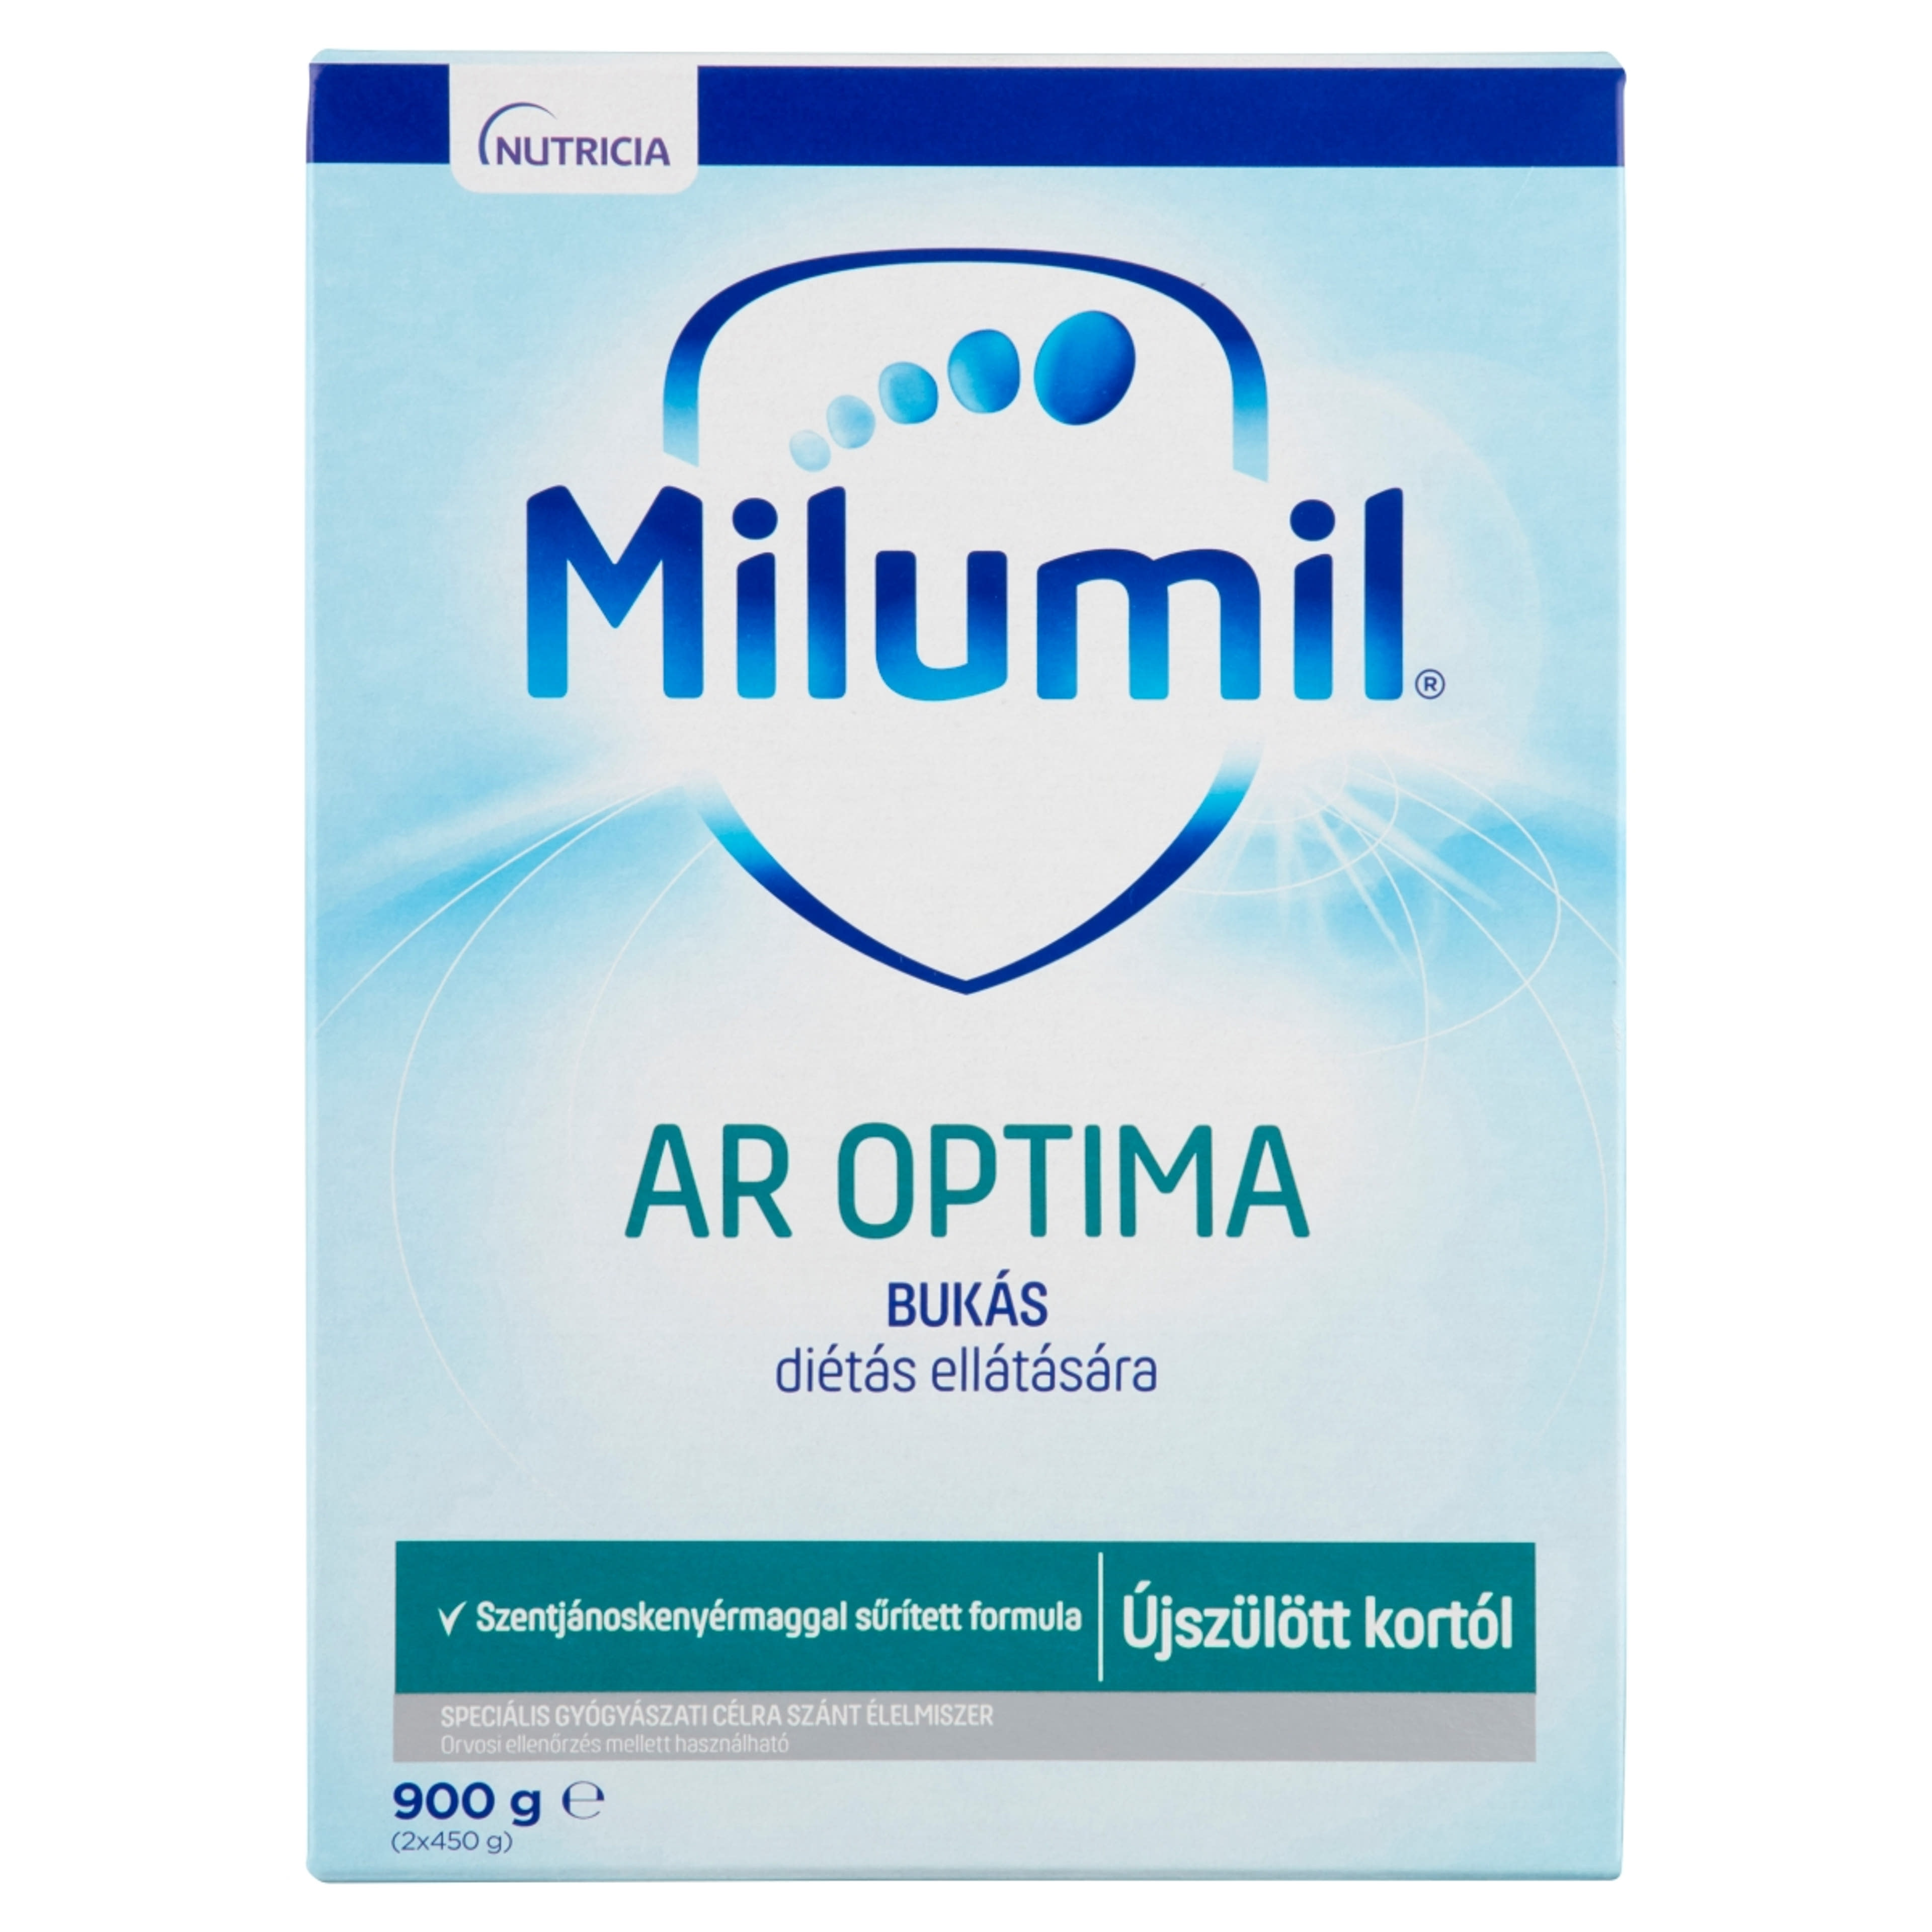 Milumil AR Optima speciális gyógyászati célra szánt élelmiszer 0 hónapos kortól - 900 g-1